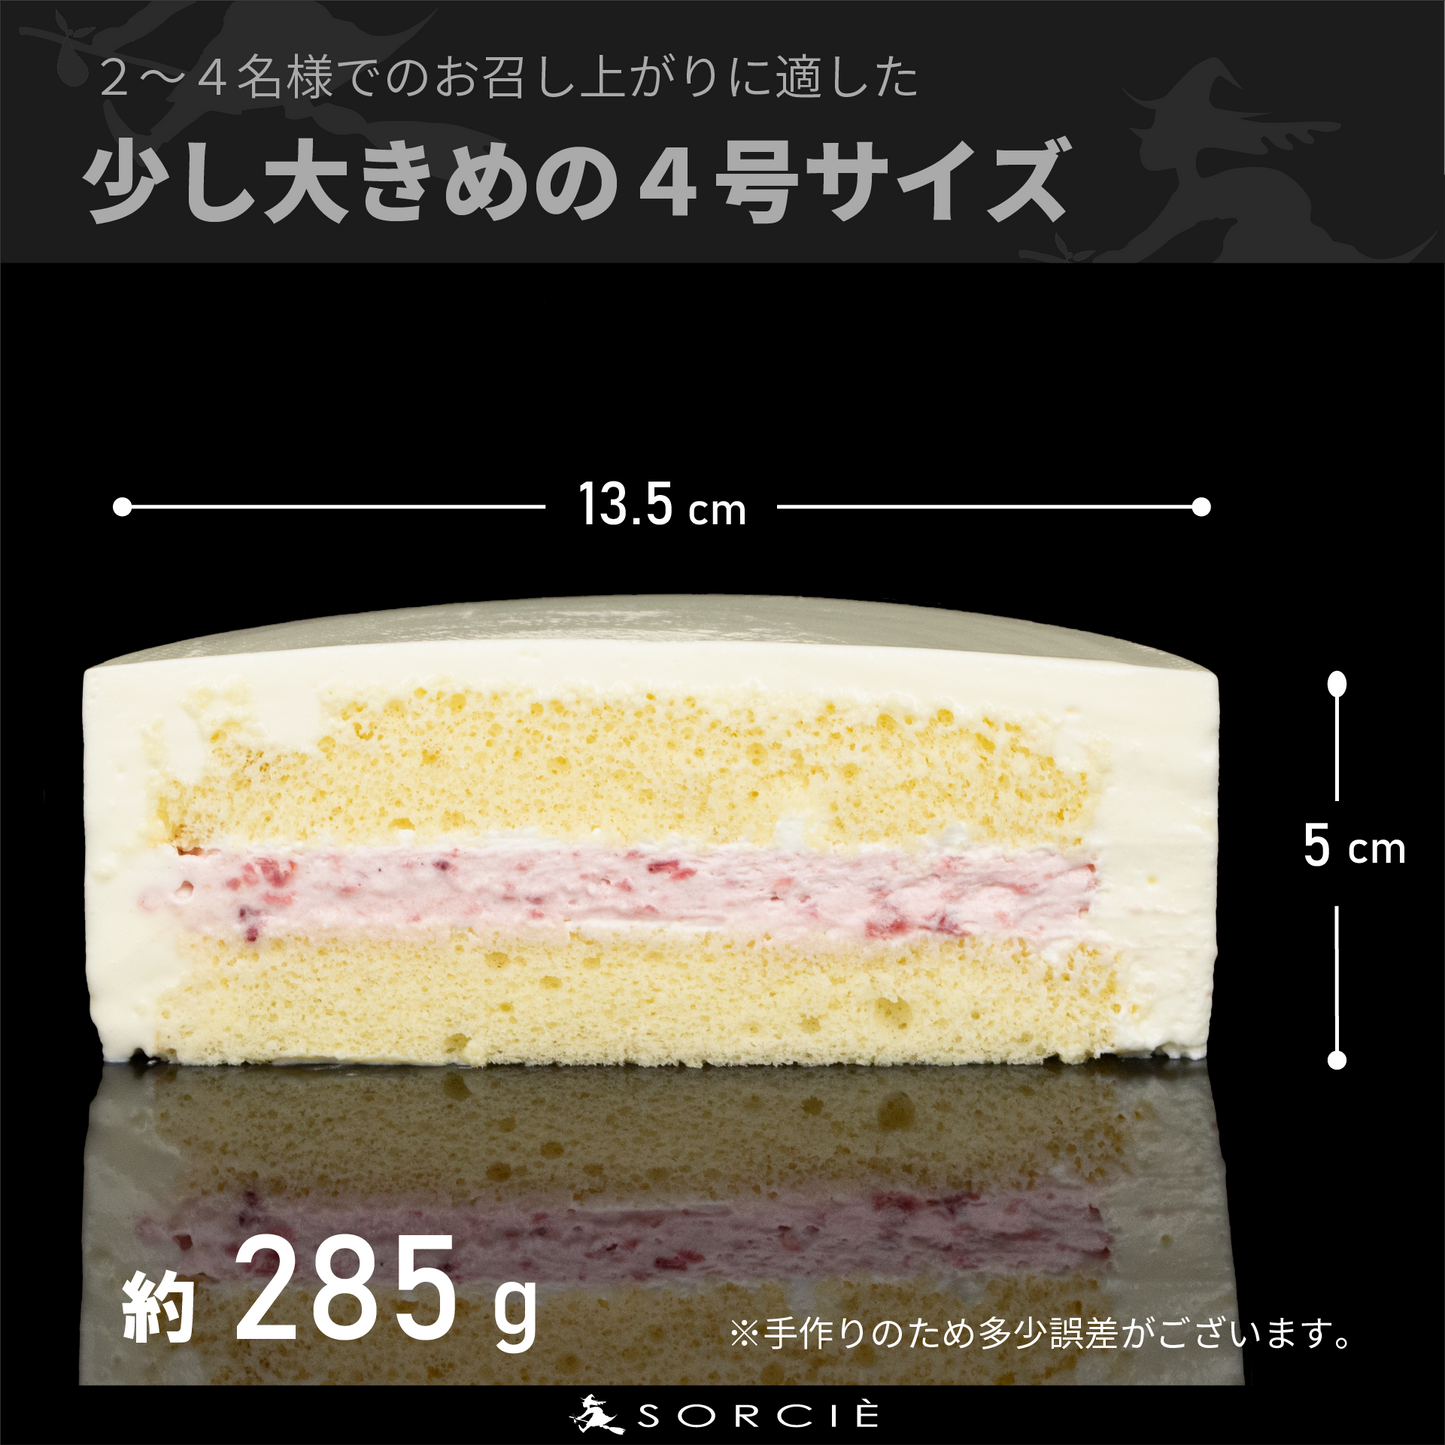 【宅配】デコるだケーキ 4号サイズ 直径13.5cm 2～4人分